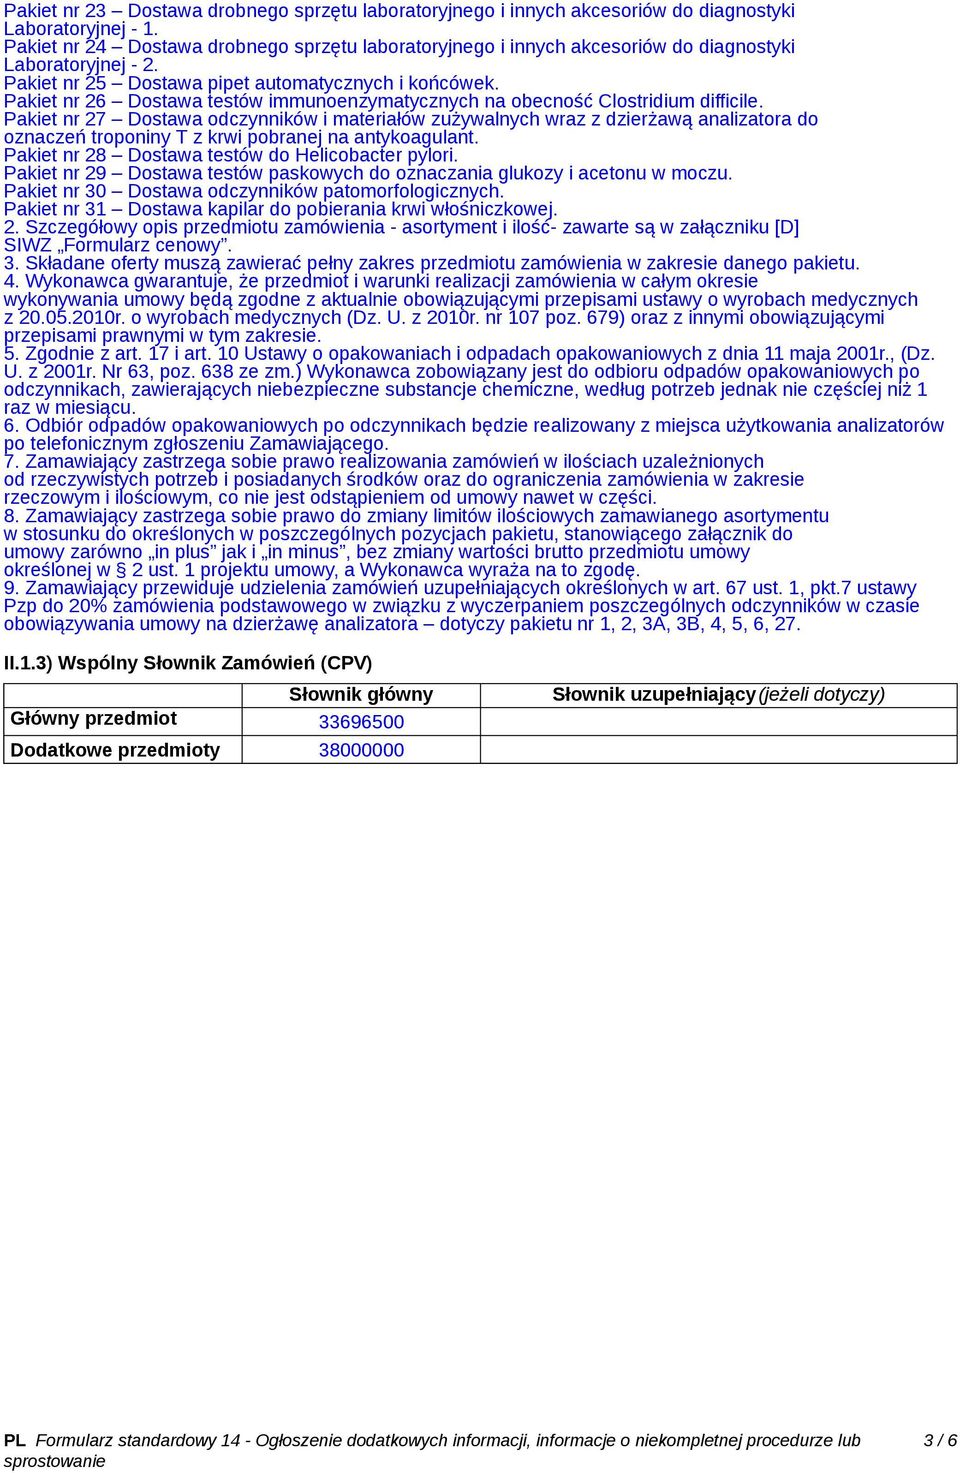 Pakiet nr 26 Dostawa testów immunoenzymatycznych na obecność Clostridium difficile.